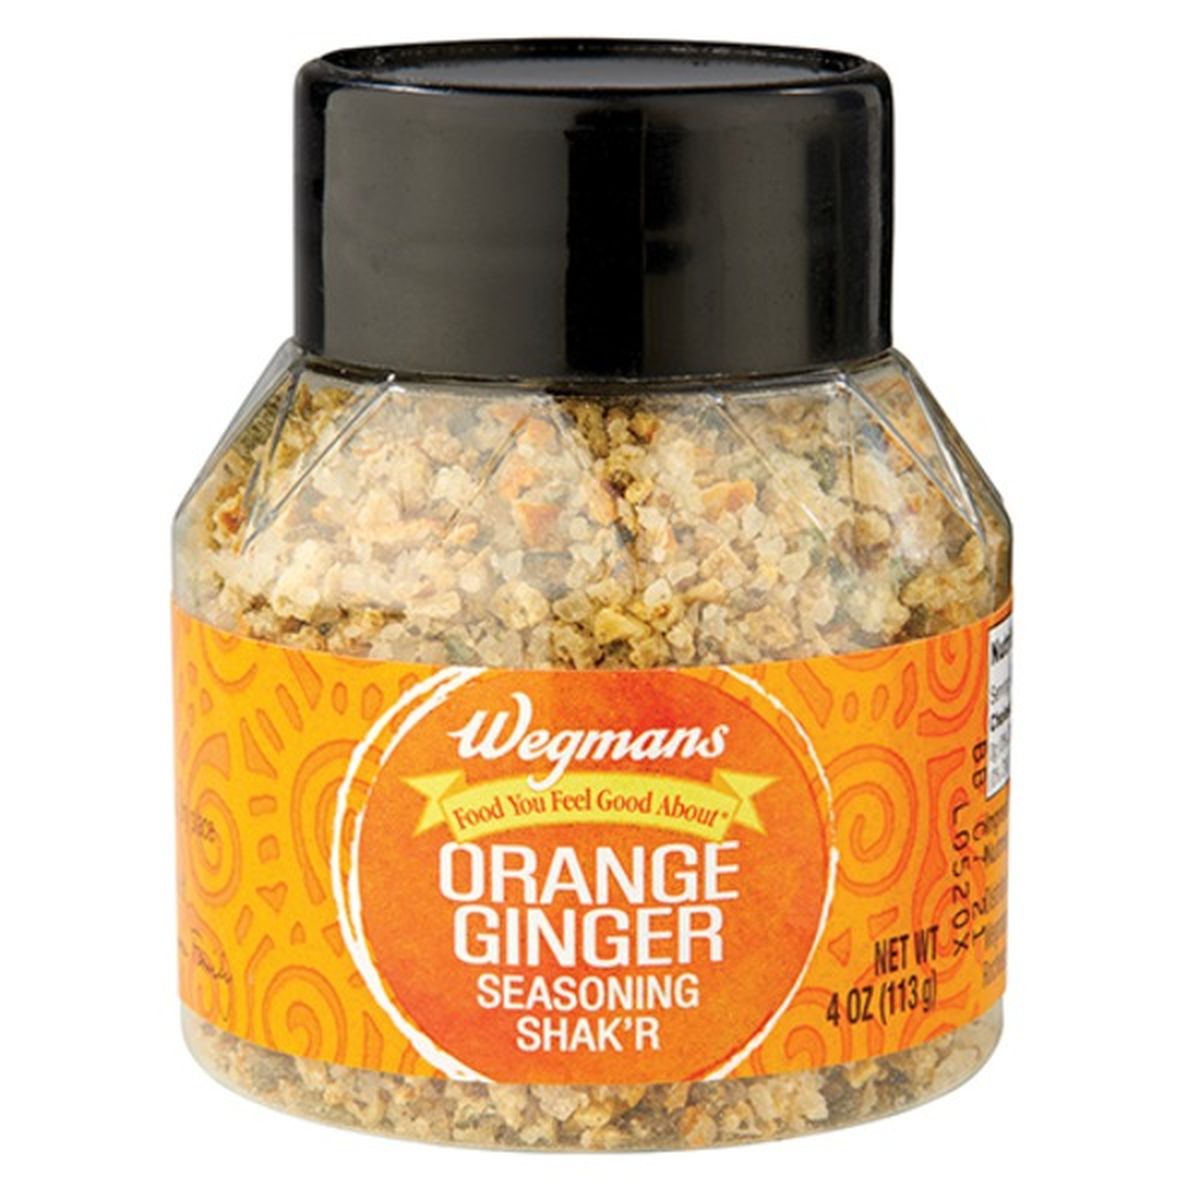 Calories in Wegmans Orange Ginger Seasoning Shak'r